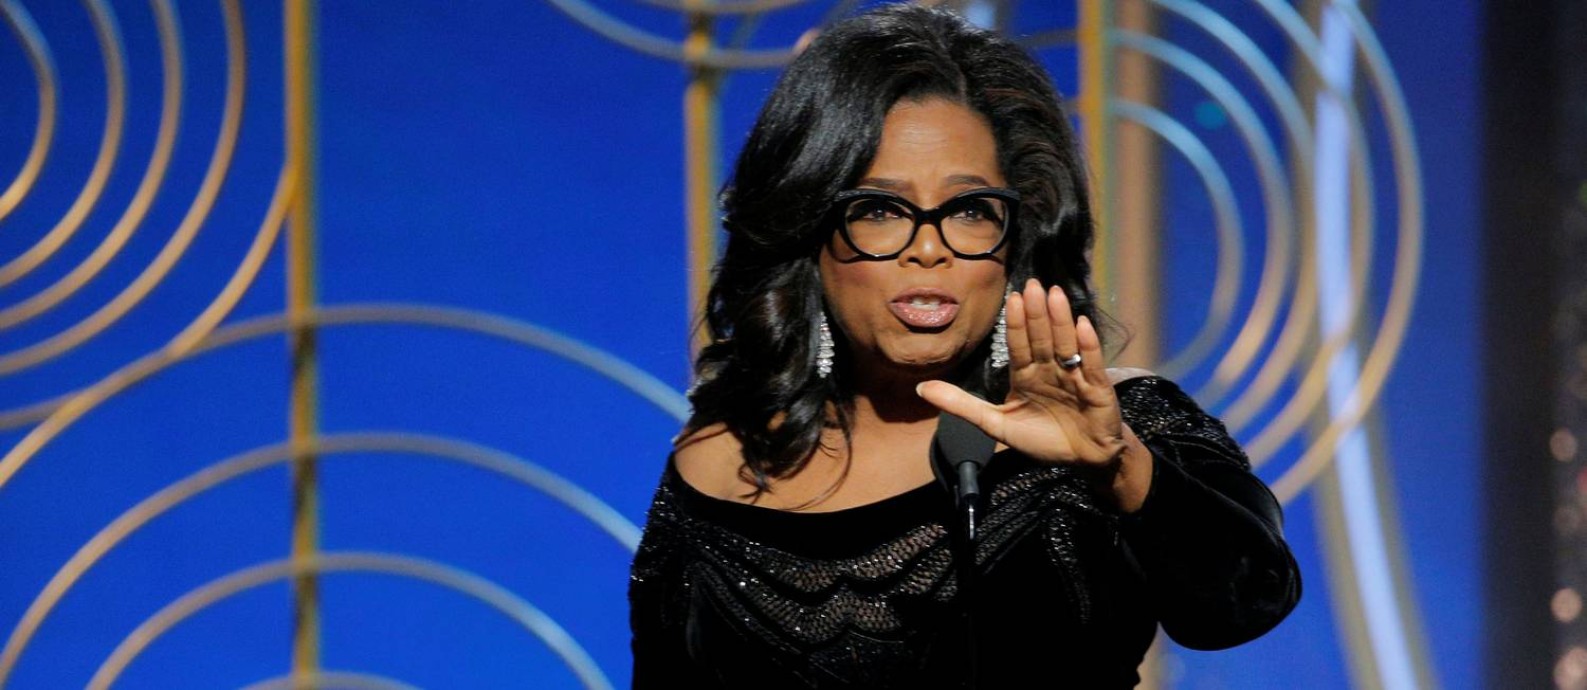 Em seu discurso de aceitação do prêmio Cecil B. DeMille, Oprah Winfrey menciona, entre outras coisas, seu apoio ao trabalho da imprensa Foto: HANDOUT / REUTERS